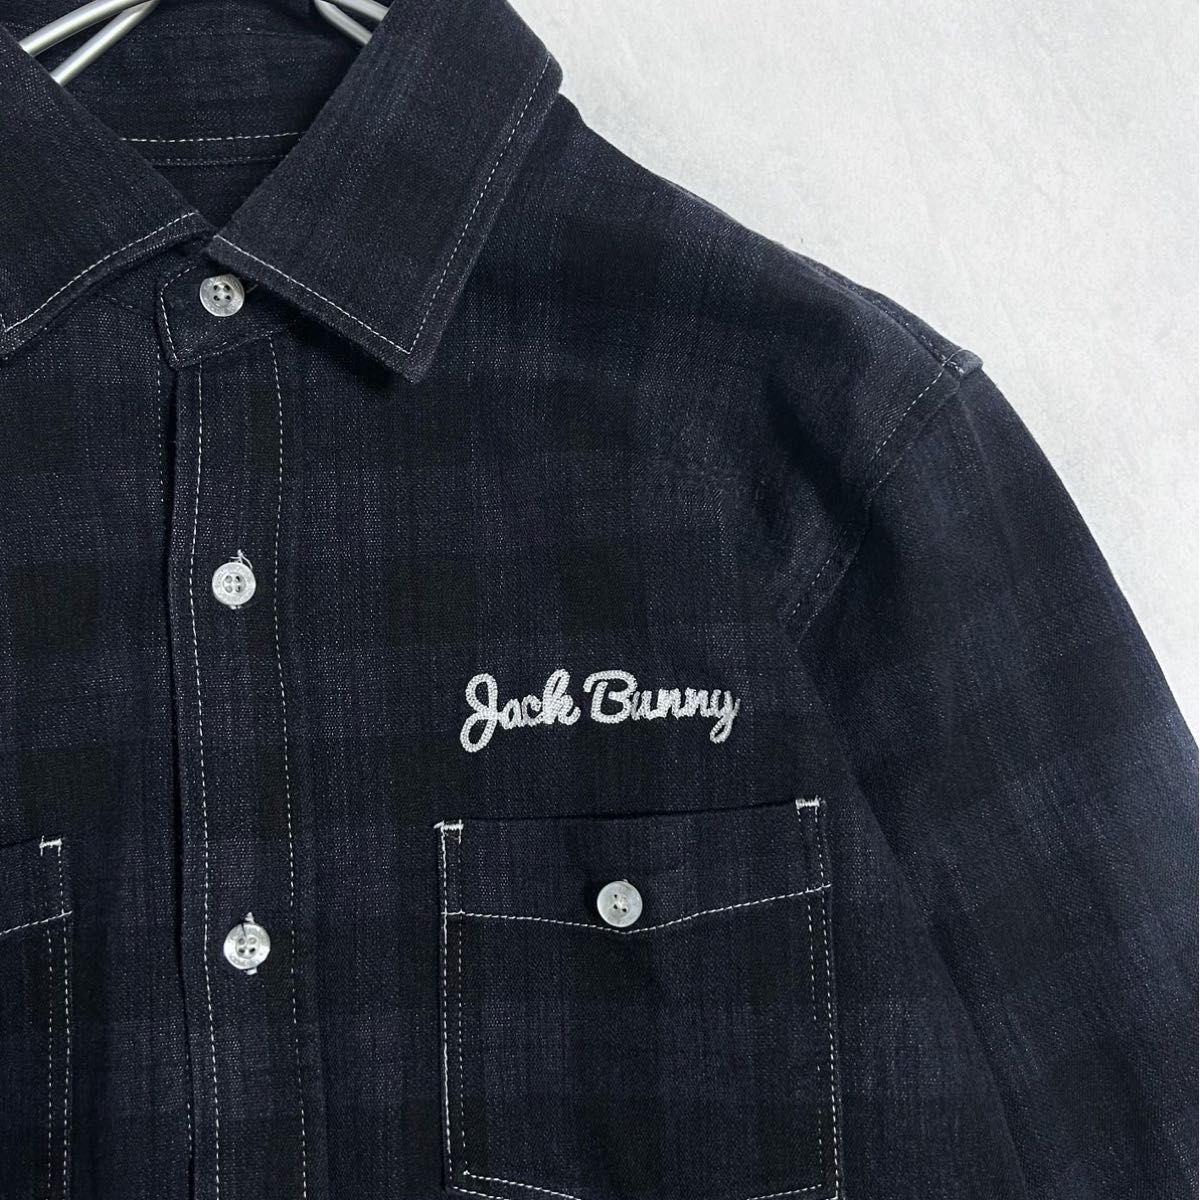 ジャックバニー チェックシャツ 長袖 6サイズ パーリーゲイツ Jack Bunny